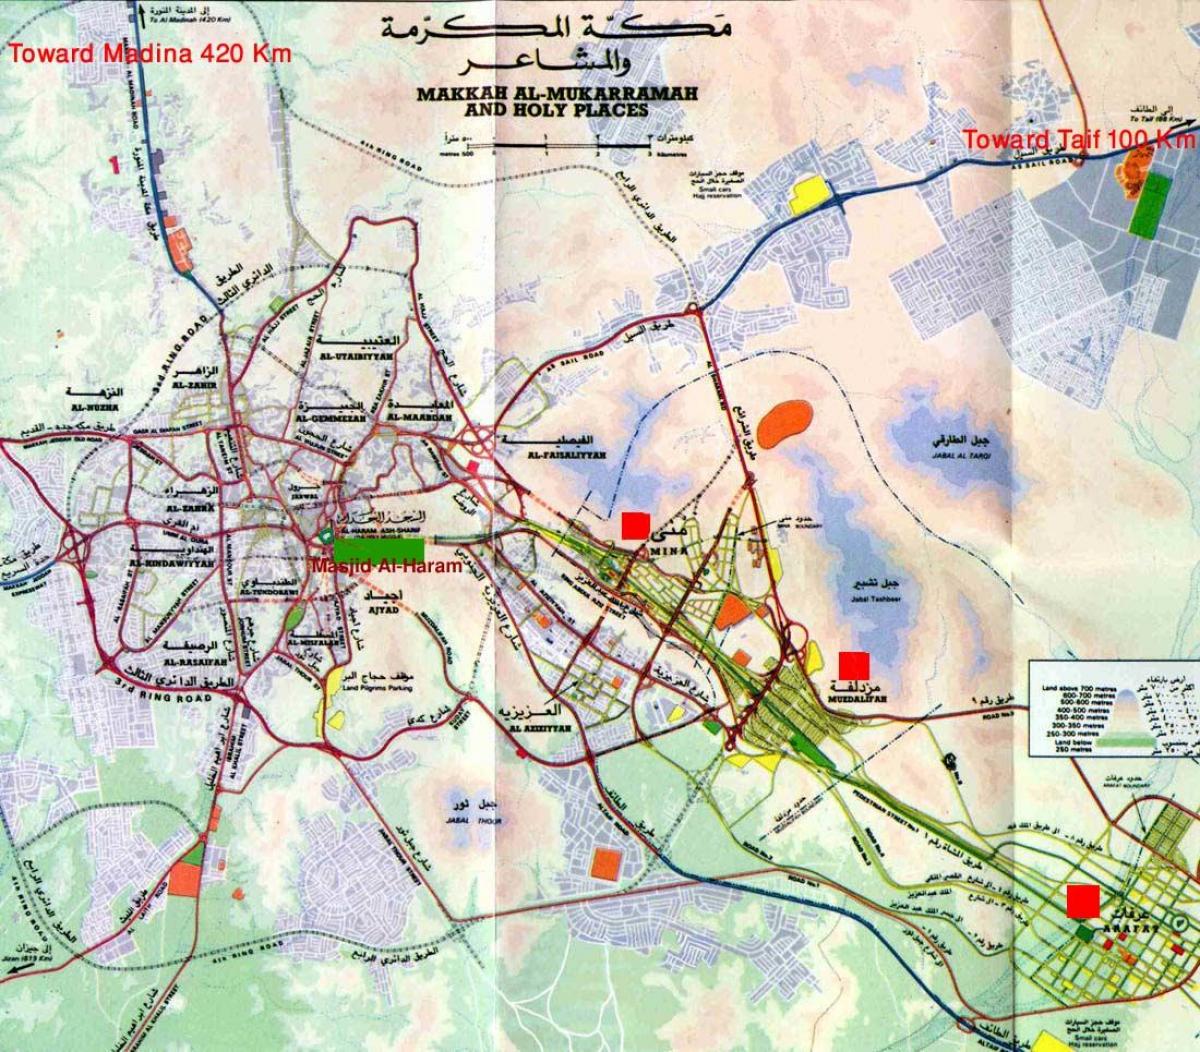 Մեքքա մզկիթ Ալ-հարամ Շարիֆ քարտեզի վրա